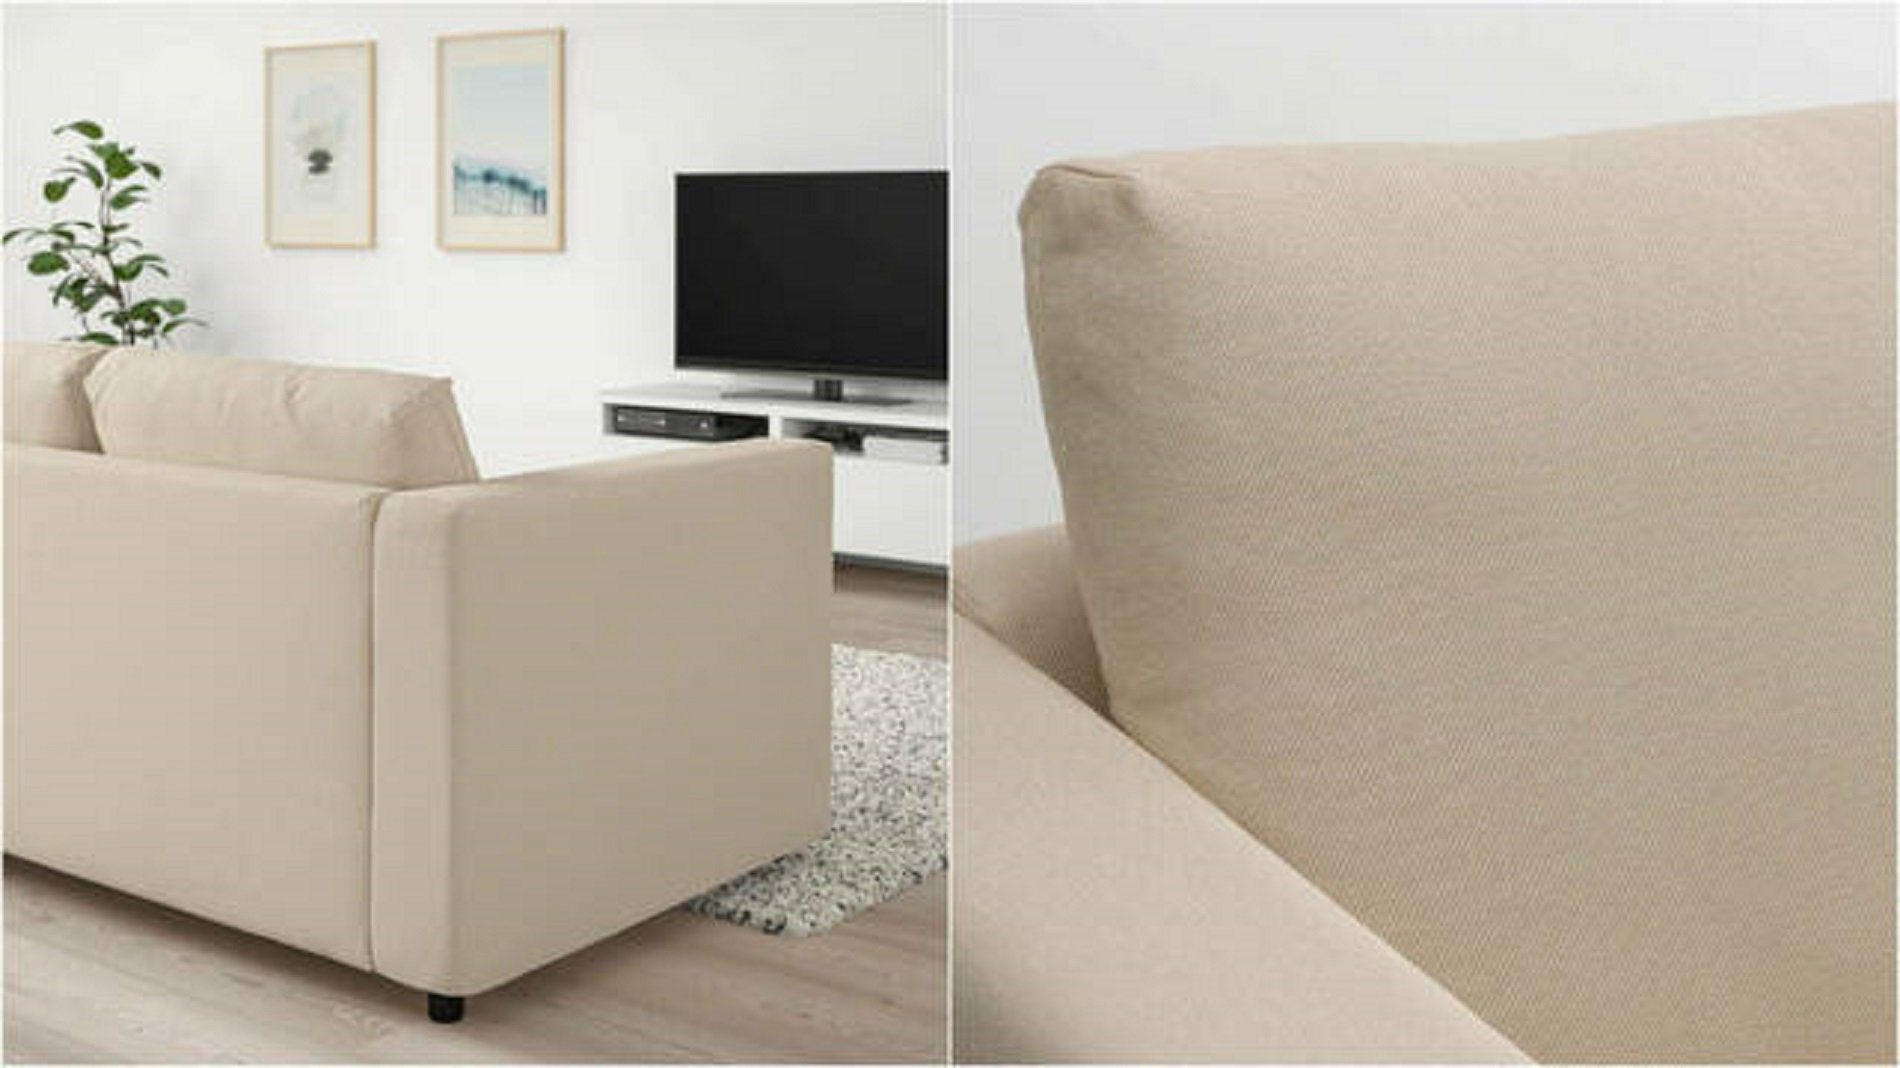 el nuevo sofa cama de ikea cortesia (1)